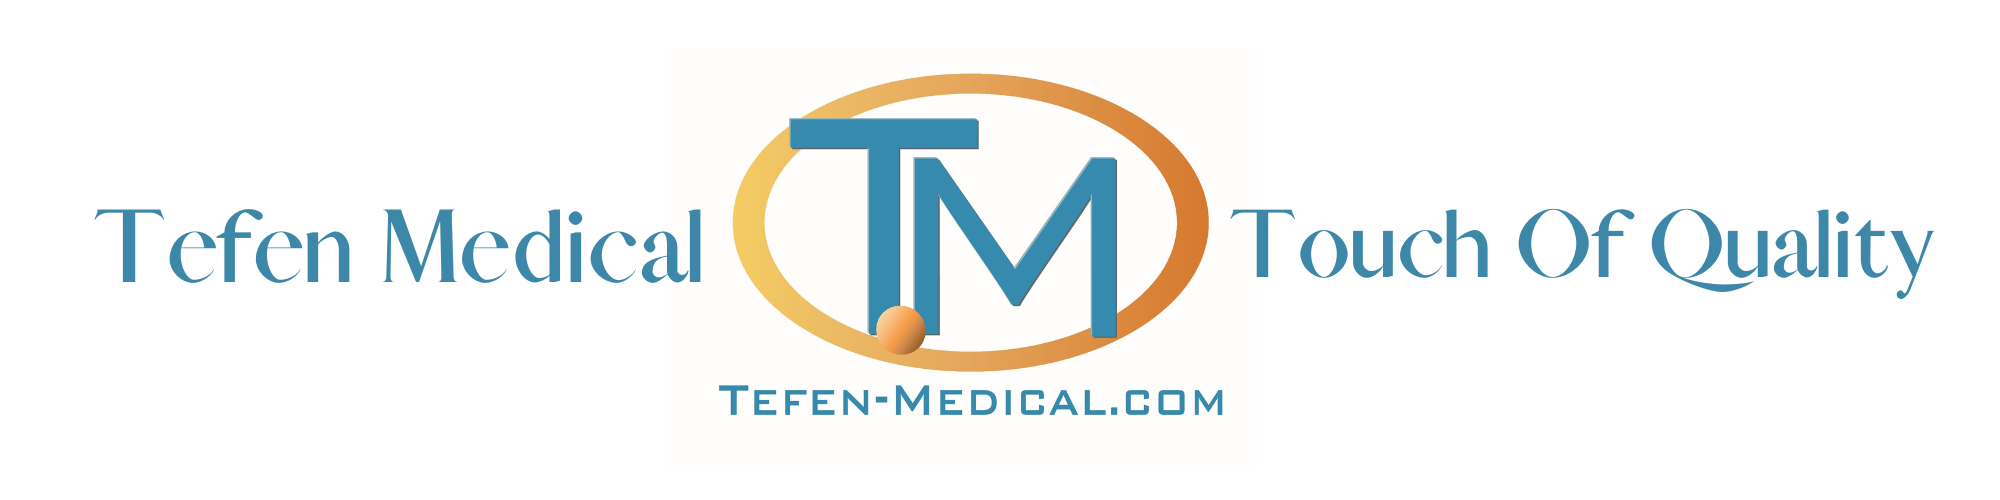 tefen-medical.com